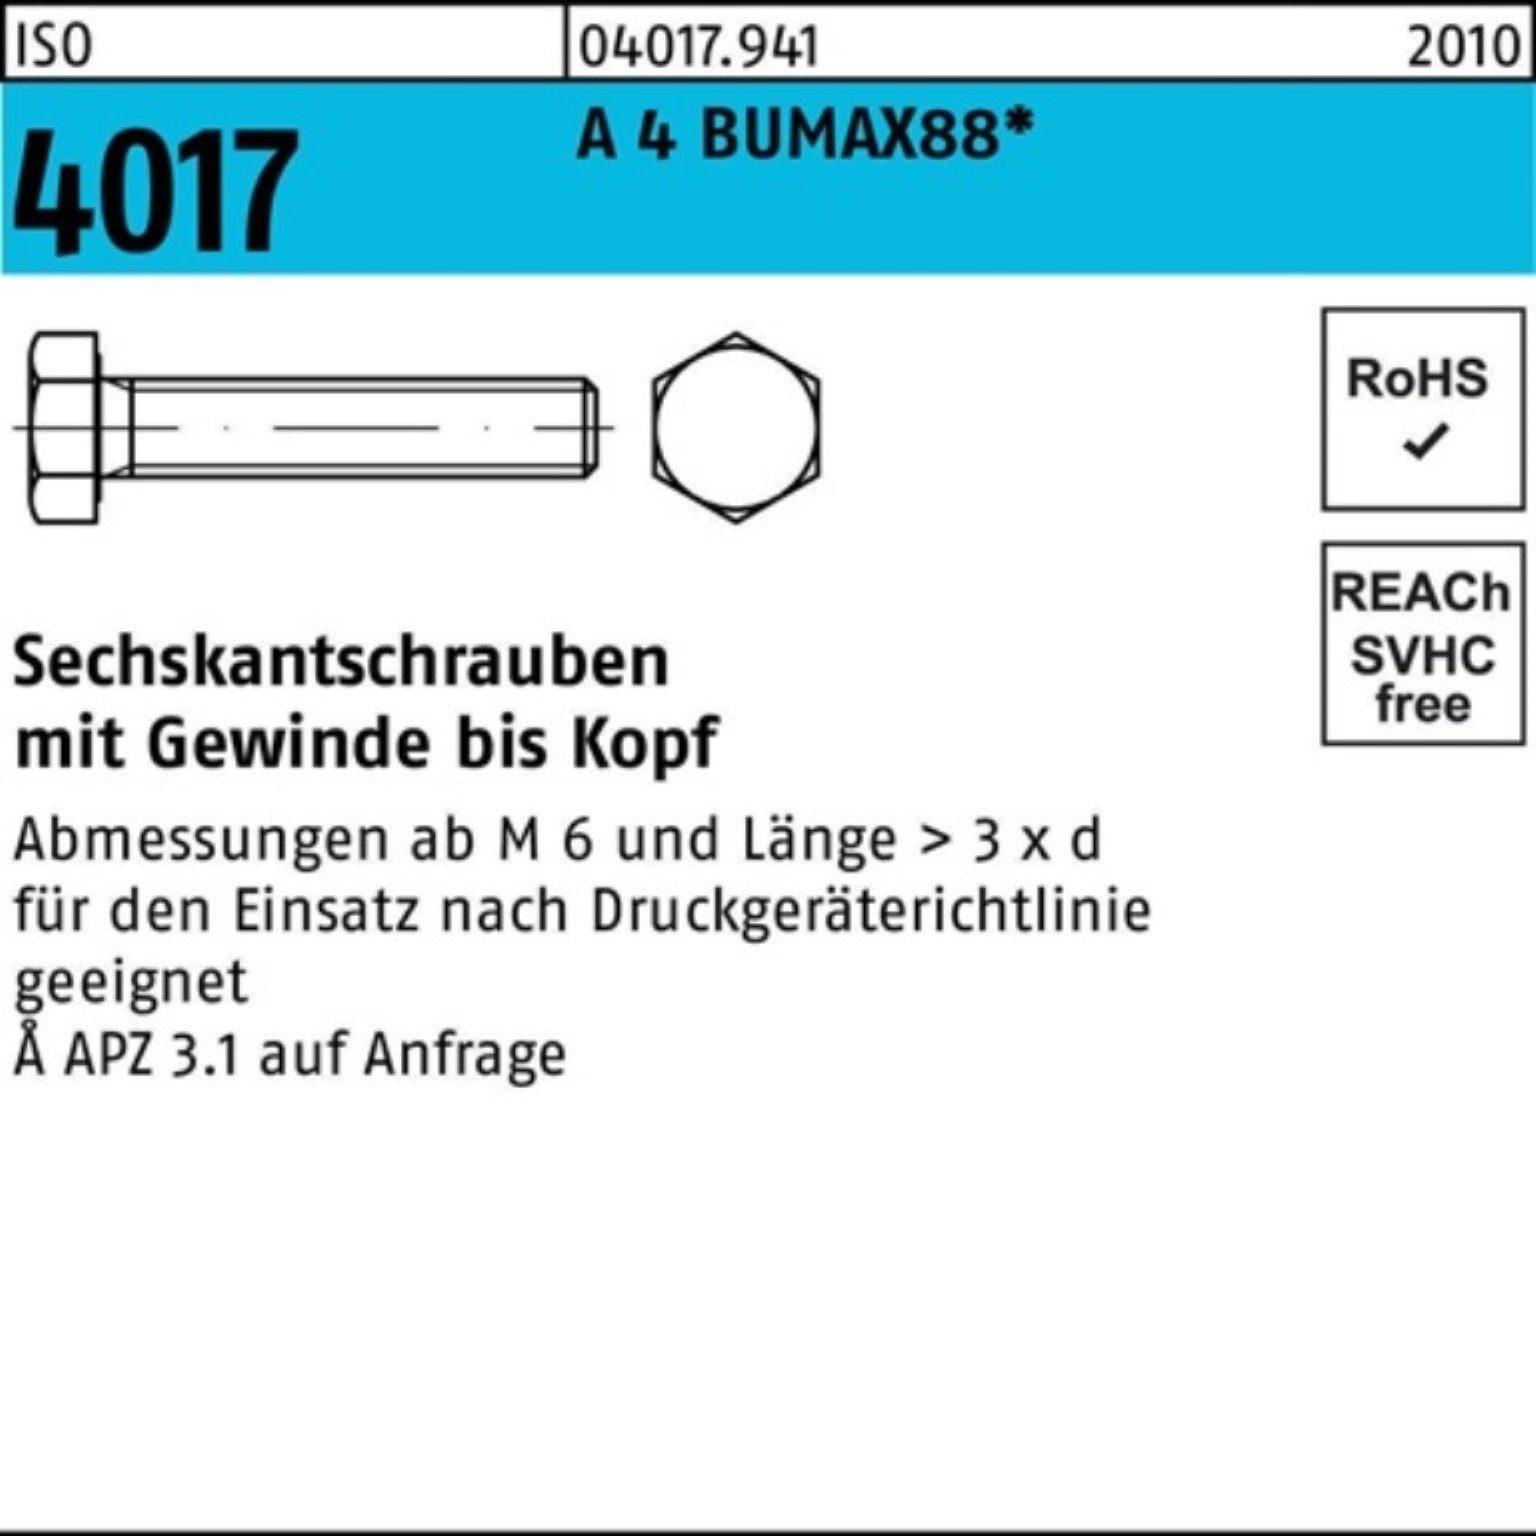 Bufab Sechskantschraube 100er Pack Sechskantschraube ISO 4017 VG M8x 30 A 4 BUMAX88 50 Stück